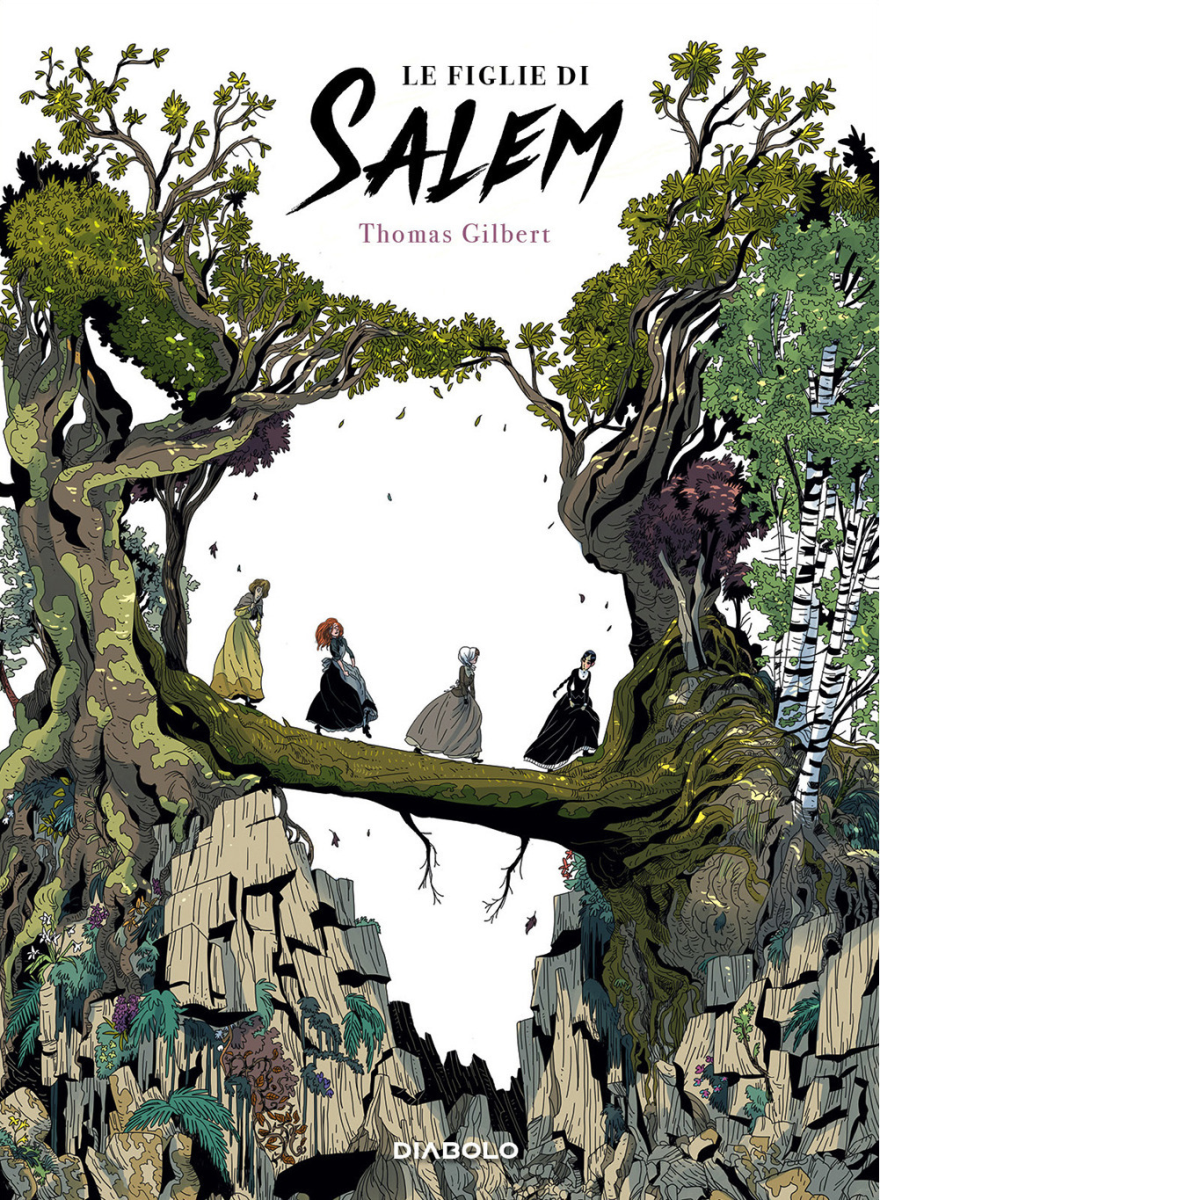 Le figlie di Salem di Thomas Gilbert - Diabolo editore, 2019